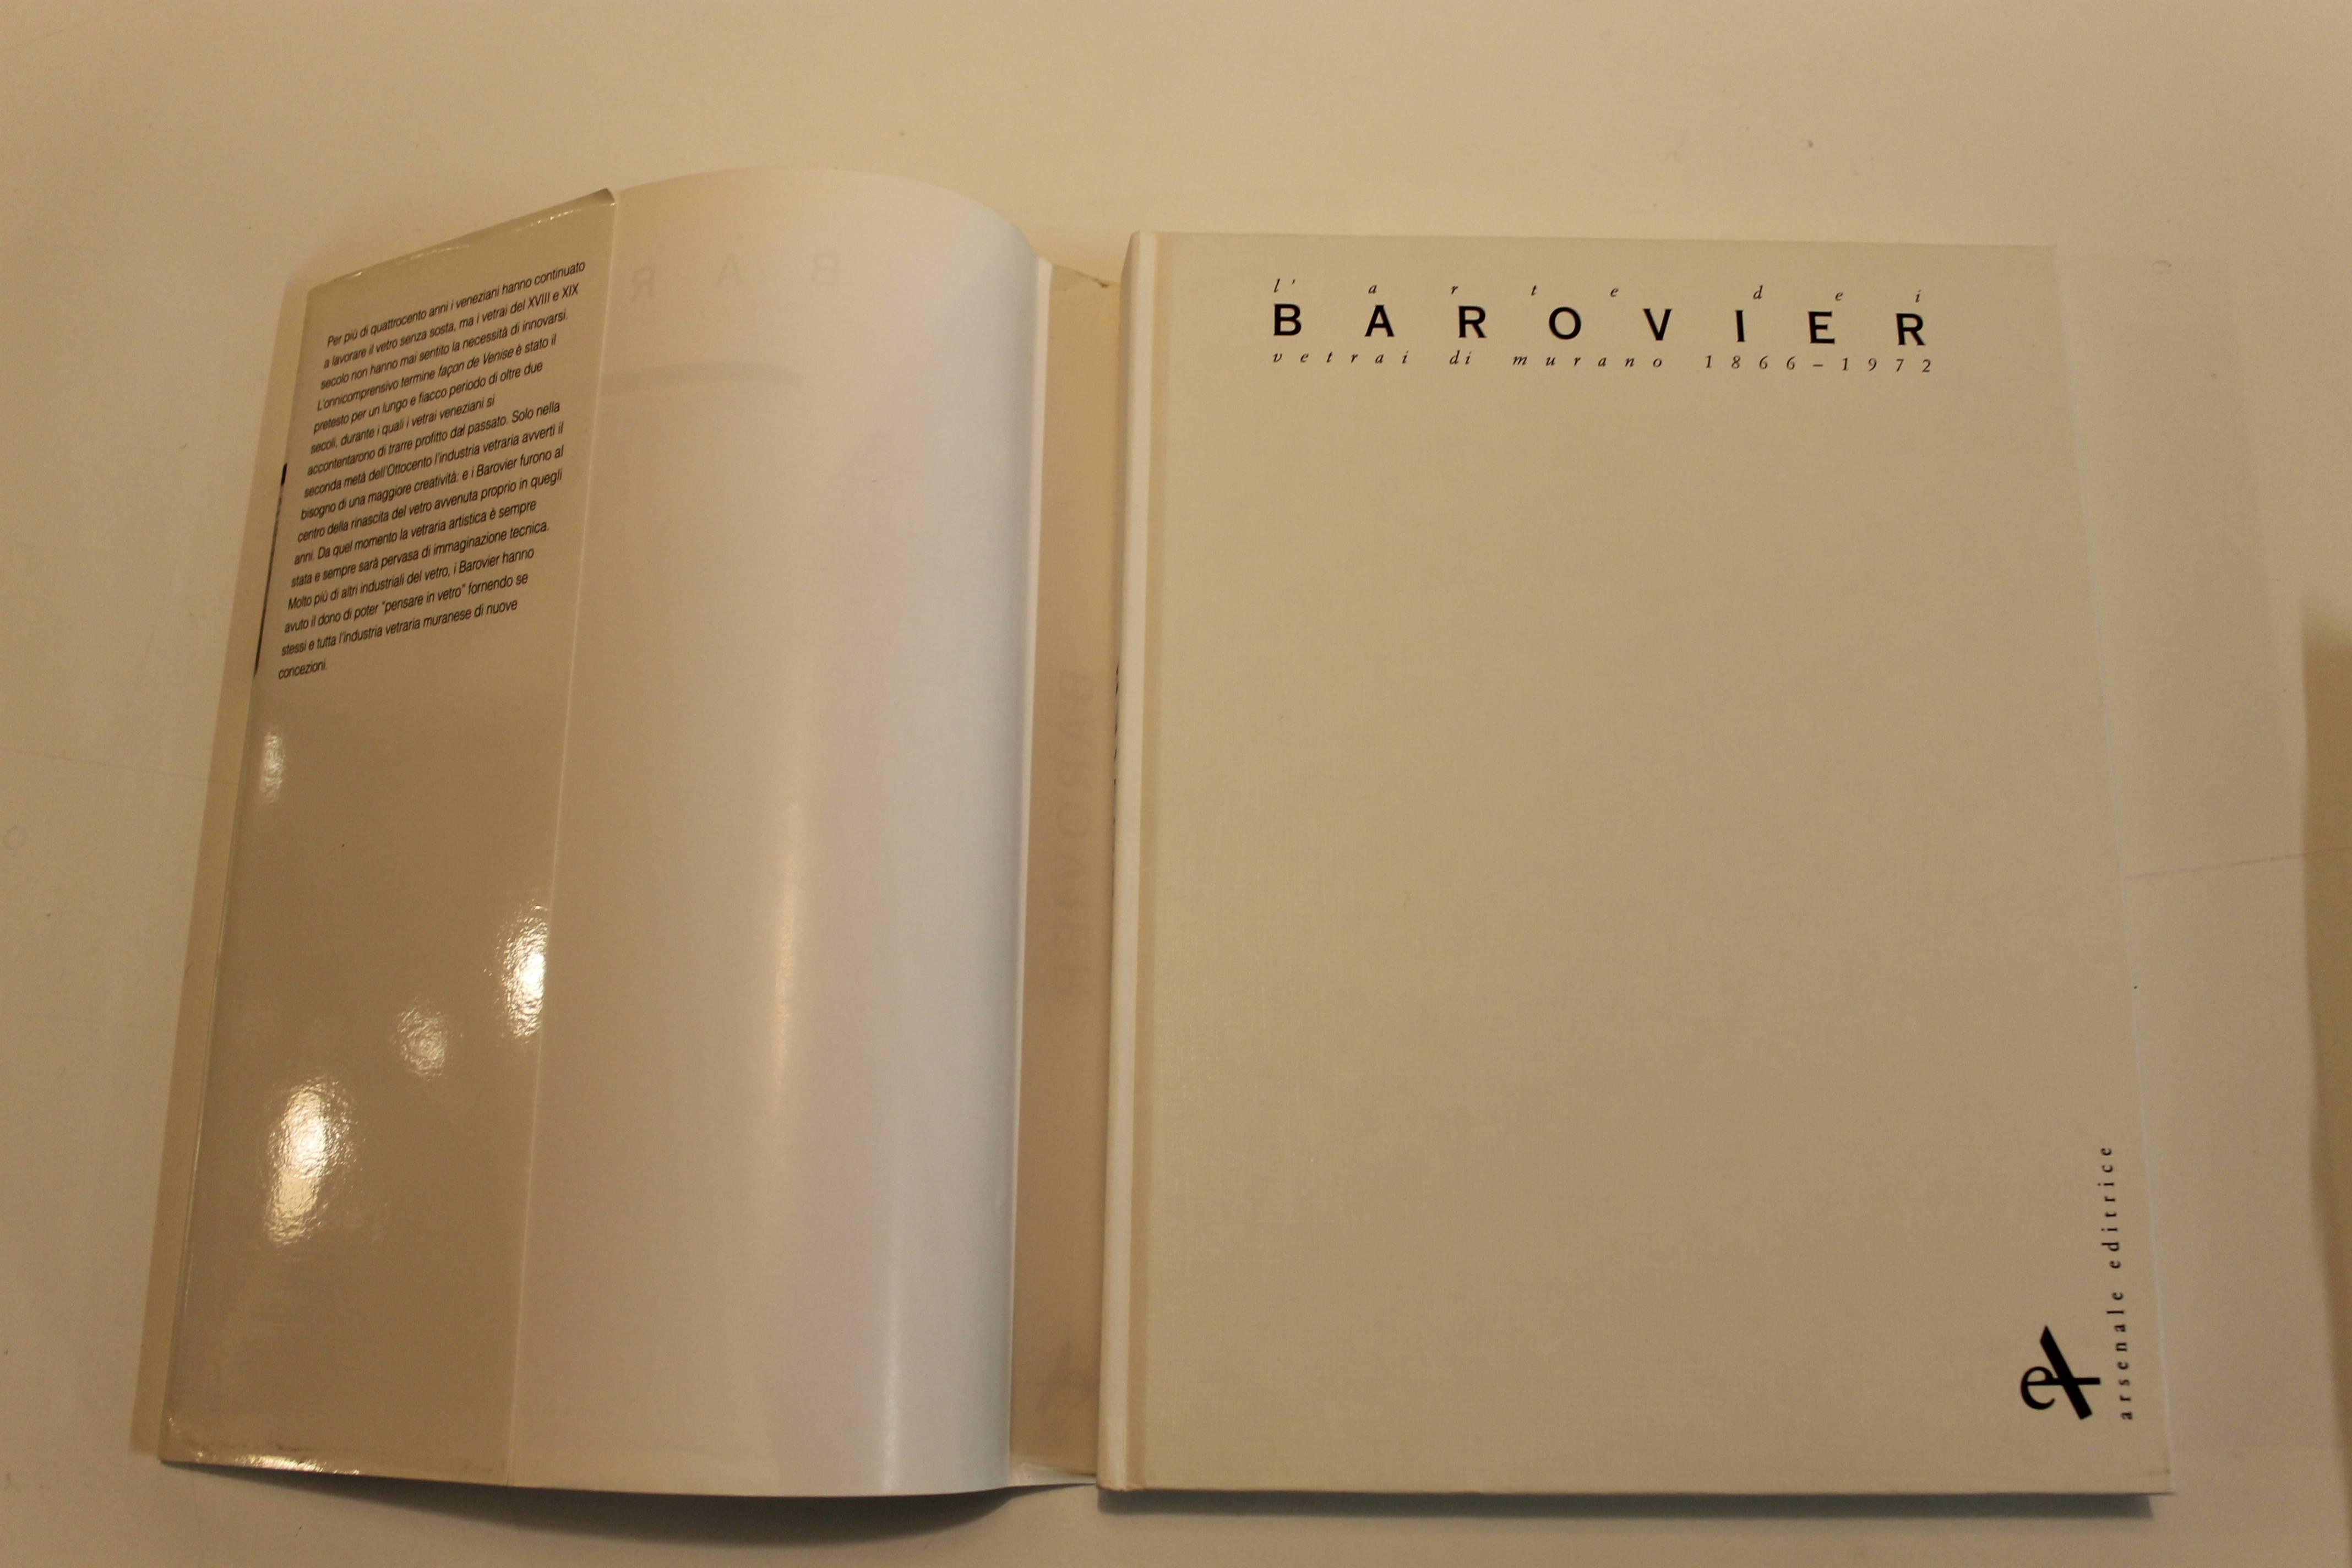 Barovier und Toso Buch von Marina Barovier 1993.

212 Seiten mit 184 Farbabbildungen aus den Jahren 1866-1972.